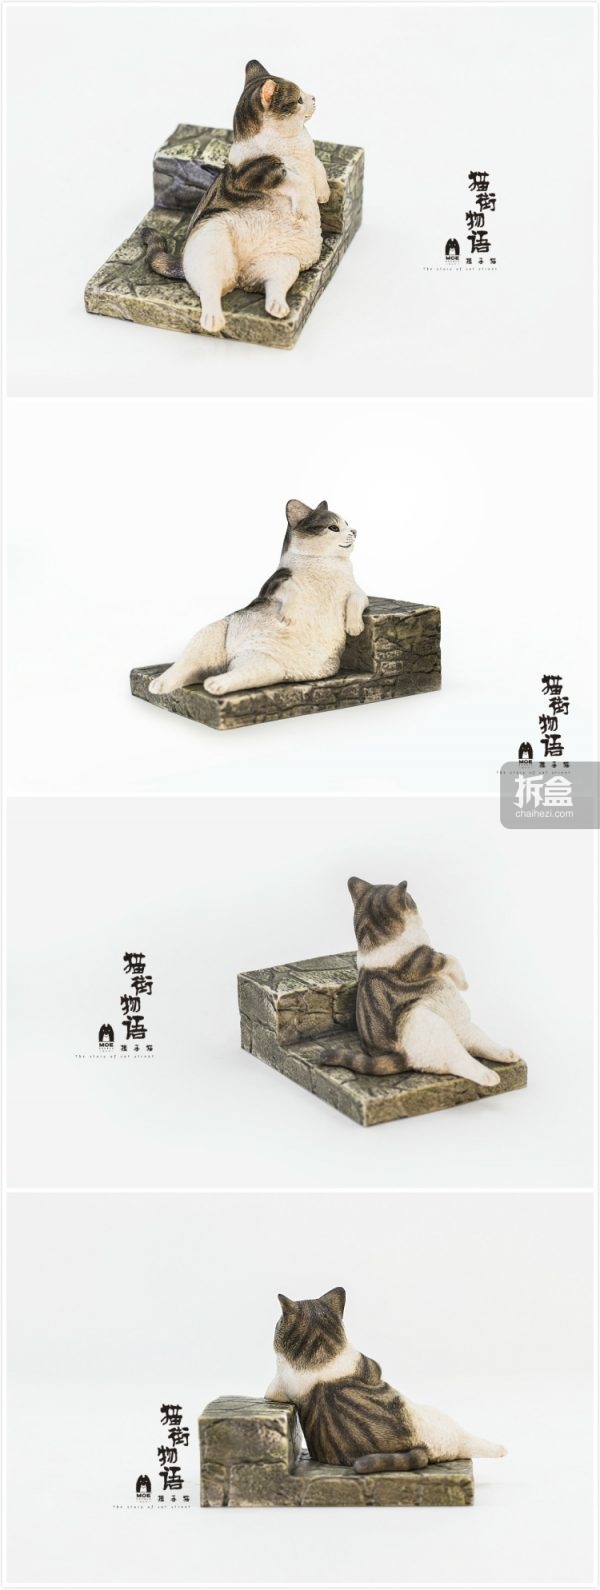 萌达布工作室 猫街物语 可爱猫咪树脂材质艺术收藏玩具 拆盒网